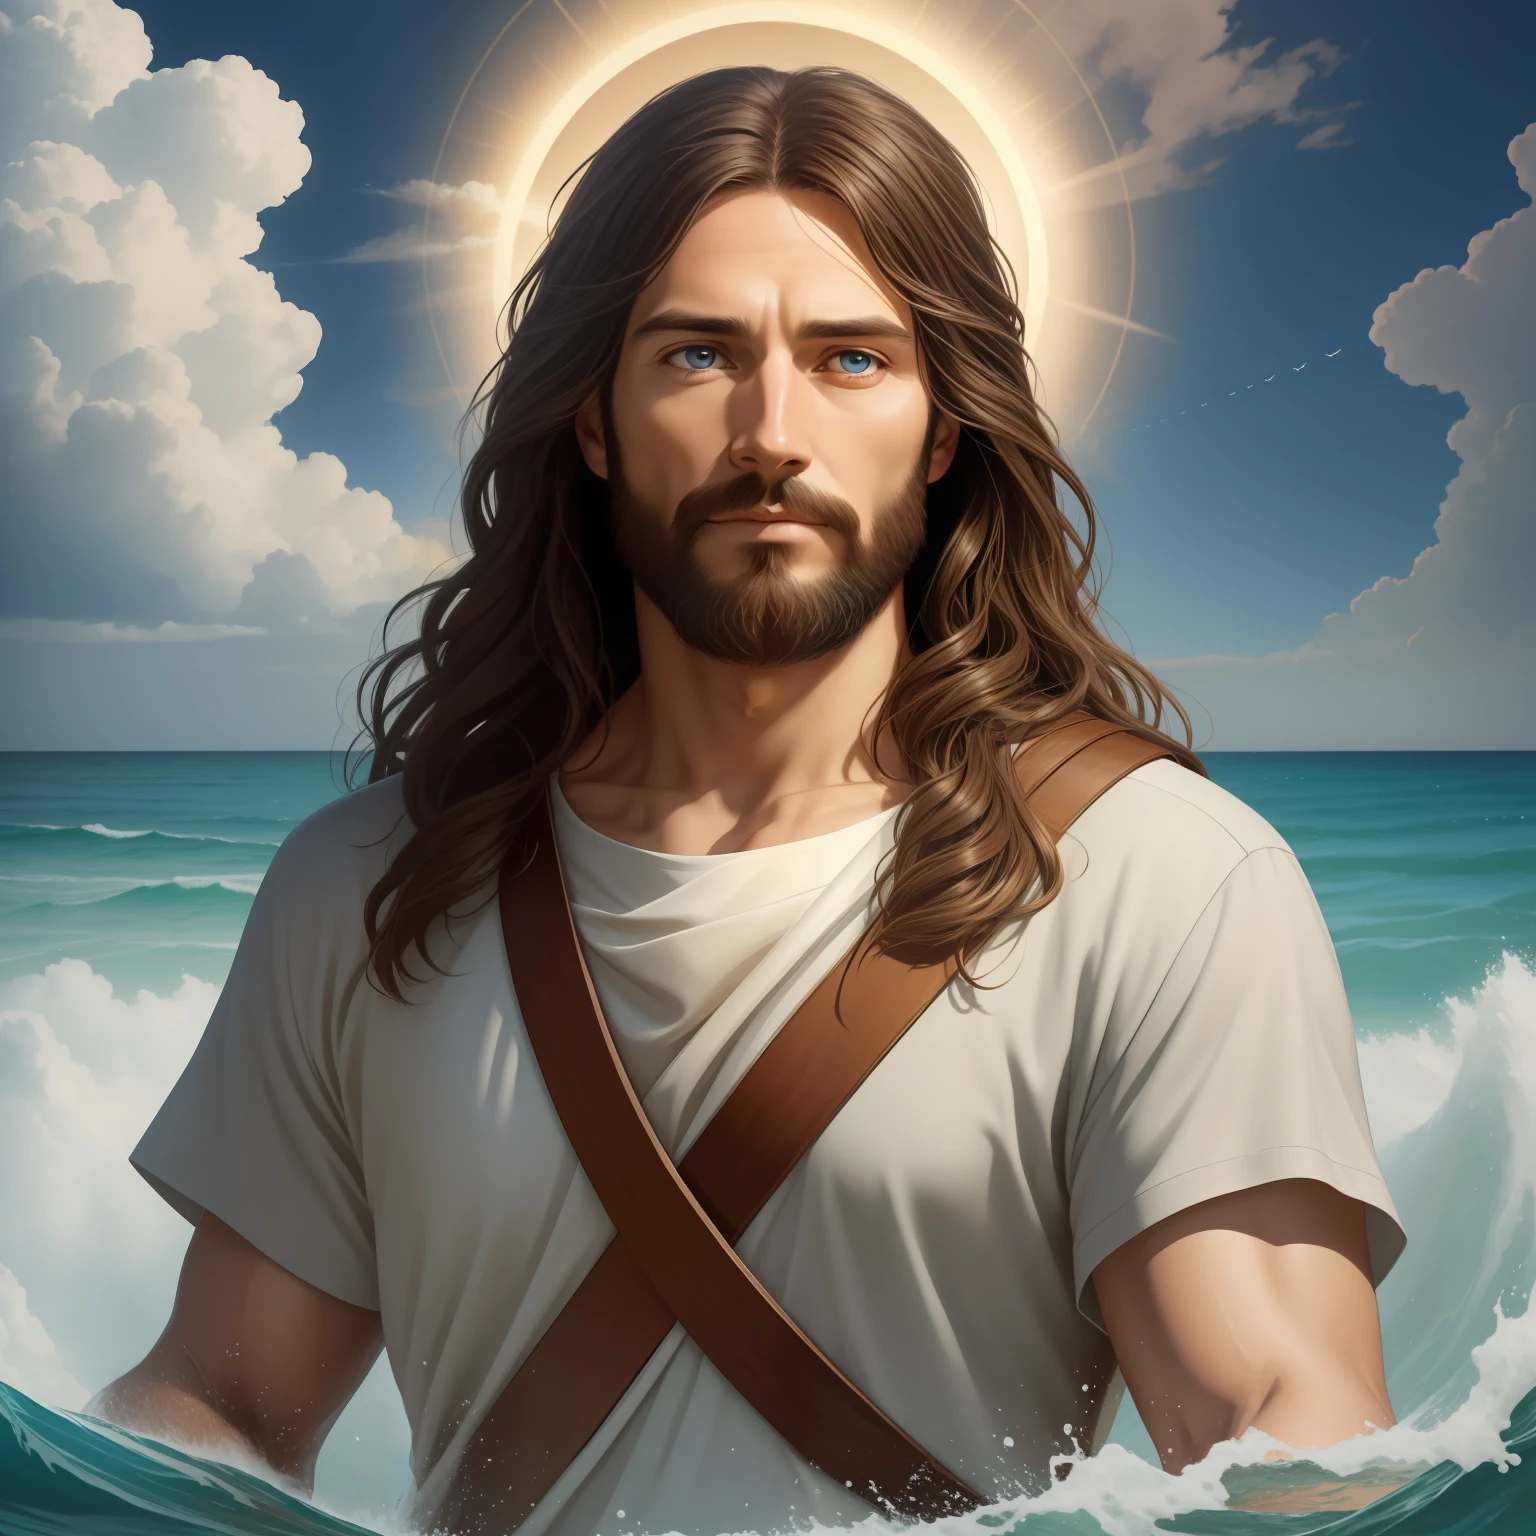 A beautiful ultra-thin 現実的 portrait of Jesus, 預言者, 男性 35歳 ヘブライ人 ブルネット, 短い茶色の髪, 完璧な本物の青い目, 長い茶色のひげ, と, 人々を助ける , 胸元が閉じた長いリネンのチュニックを着ている, 正面から, 全身, 聖書の, 現実的,ディエゴ・ベラスケス,ピーテル・パウル・ルーベンス,レンブラント,アレックス・ロス,8k, コンセプトアート, Photo現実的, 現実的,  図, 油絵, シュルレアリスム, Hyper現実的, 人々を助ける , デジタルアート, スタイル, watercolorReal Jesus flying on sky と a flying cloud in the background, 水の上を歩くイエス, 聖書の illustration, epic 聖書の representation, 彼を逃亡させる, 海から出てくる, ! 手に持つ!, 下船, 海の神, 美しい表現, 8k 3Dモデル, 現実的,
a 3D 現実的 of イエス と a halo in the sky, イエス christ, 天国で微笑んでいる, portrait of イエス christ, イエス face, 35 若き全能の神, 天の神の肖像画, グレッグ・オルセン, gigachad イエス, イエス of nazareth, イエス, 神の顔, 神様は私を見て, 彼はあなたを温かく迎えています, 彼は幸せだ, アバター画像